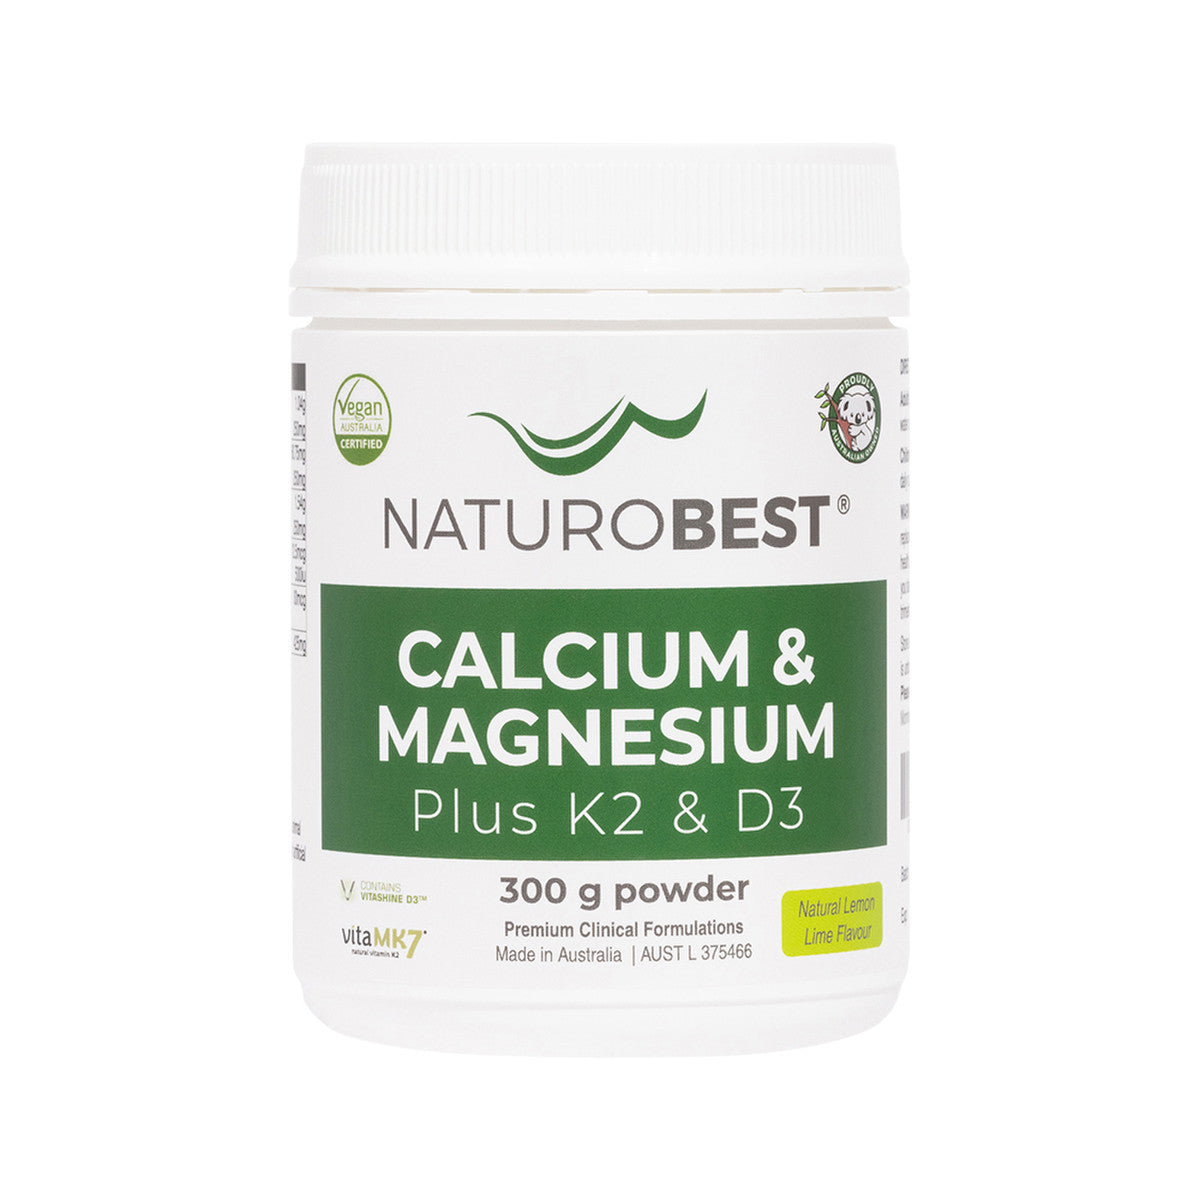 NaturoBest - Calcium and Magnesium Plus K2 and D3